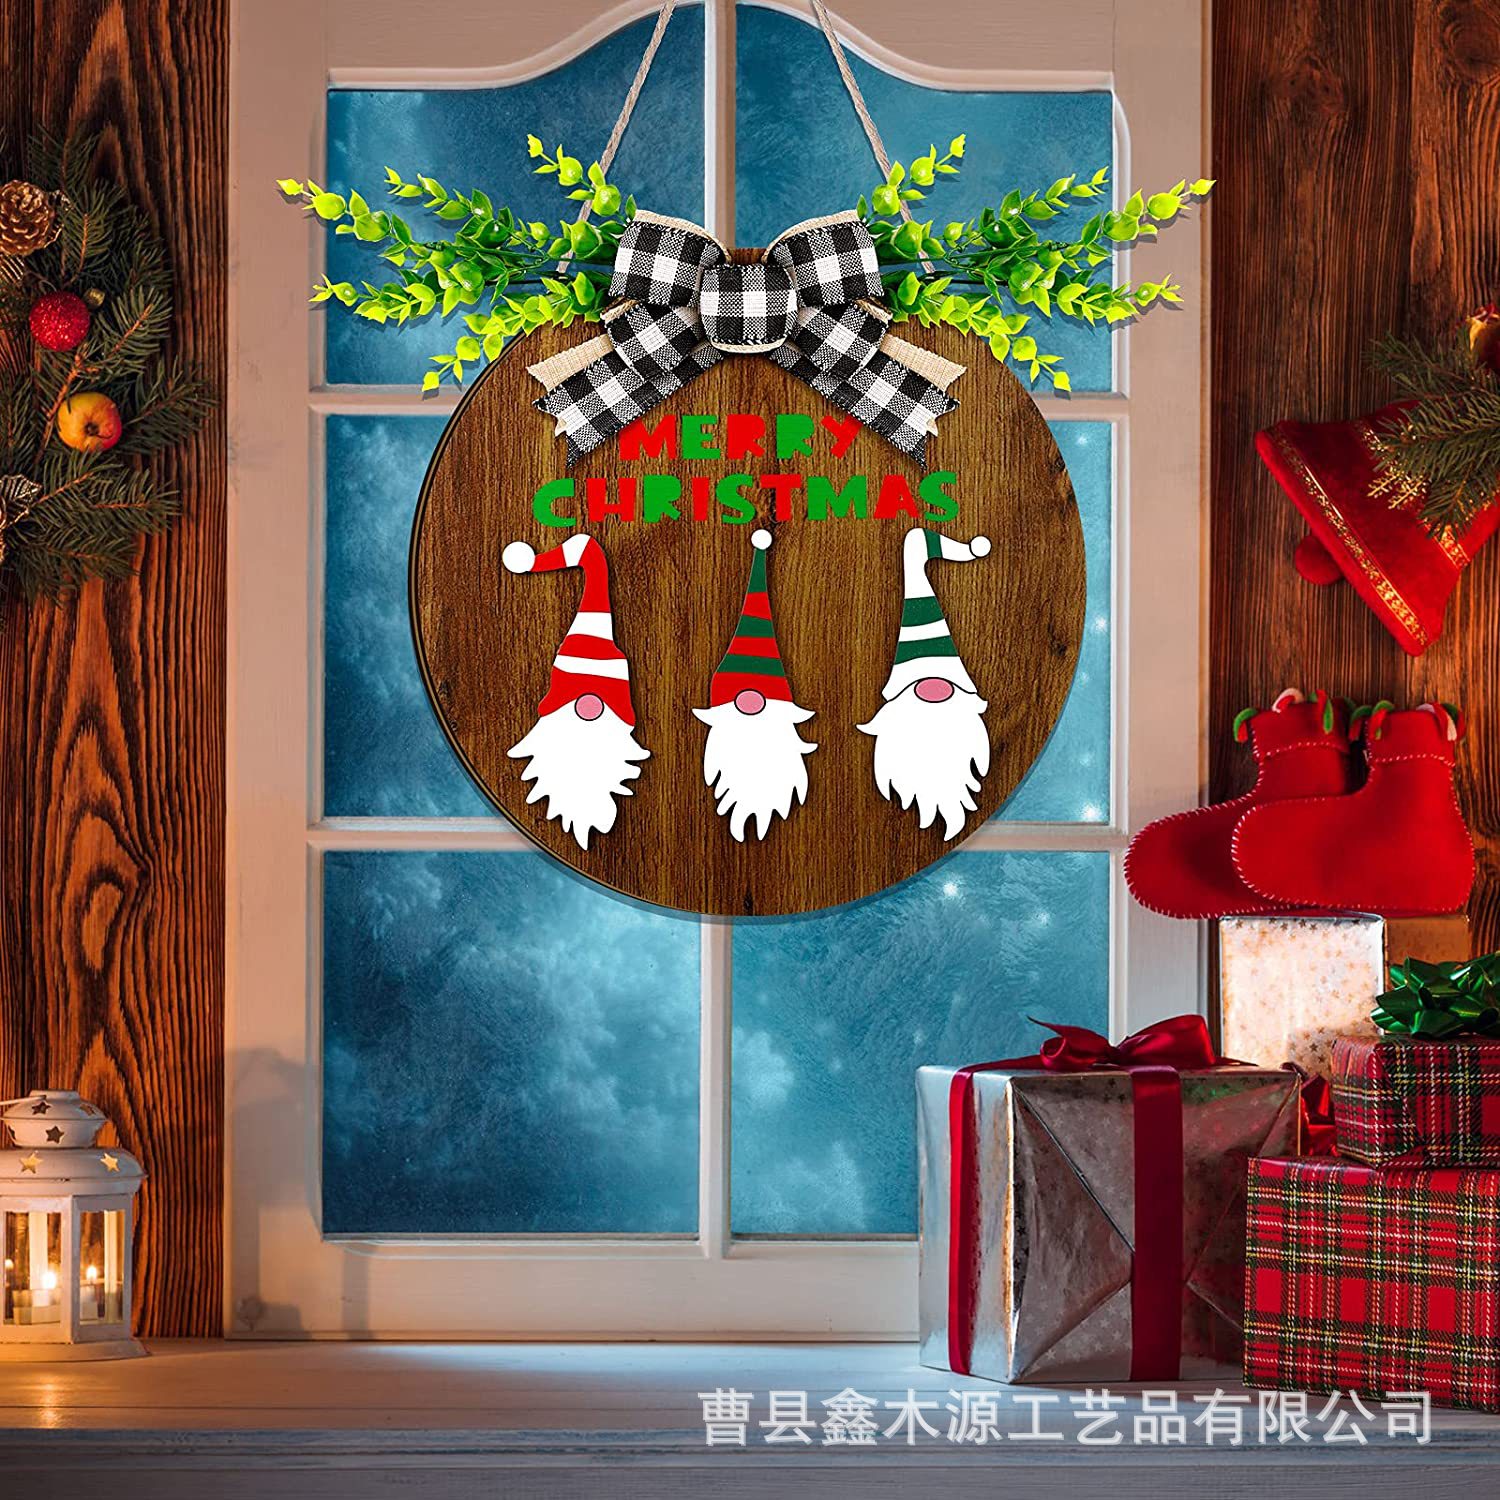 木质门上挂牌创意圣诞节气氛装饰门牌悬挂式门廊花环欢迎标志木牌